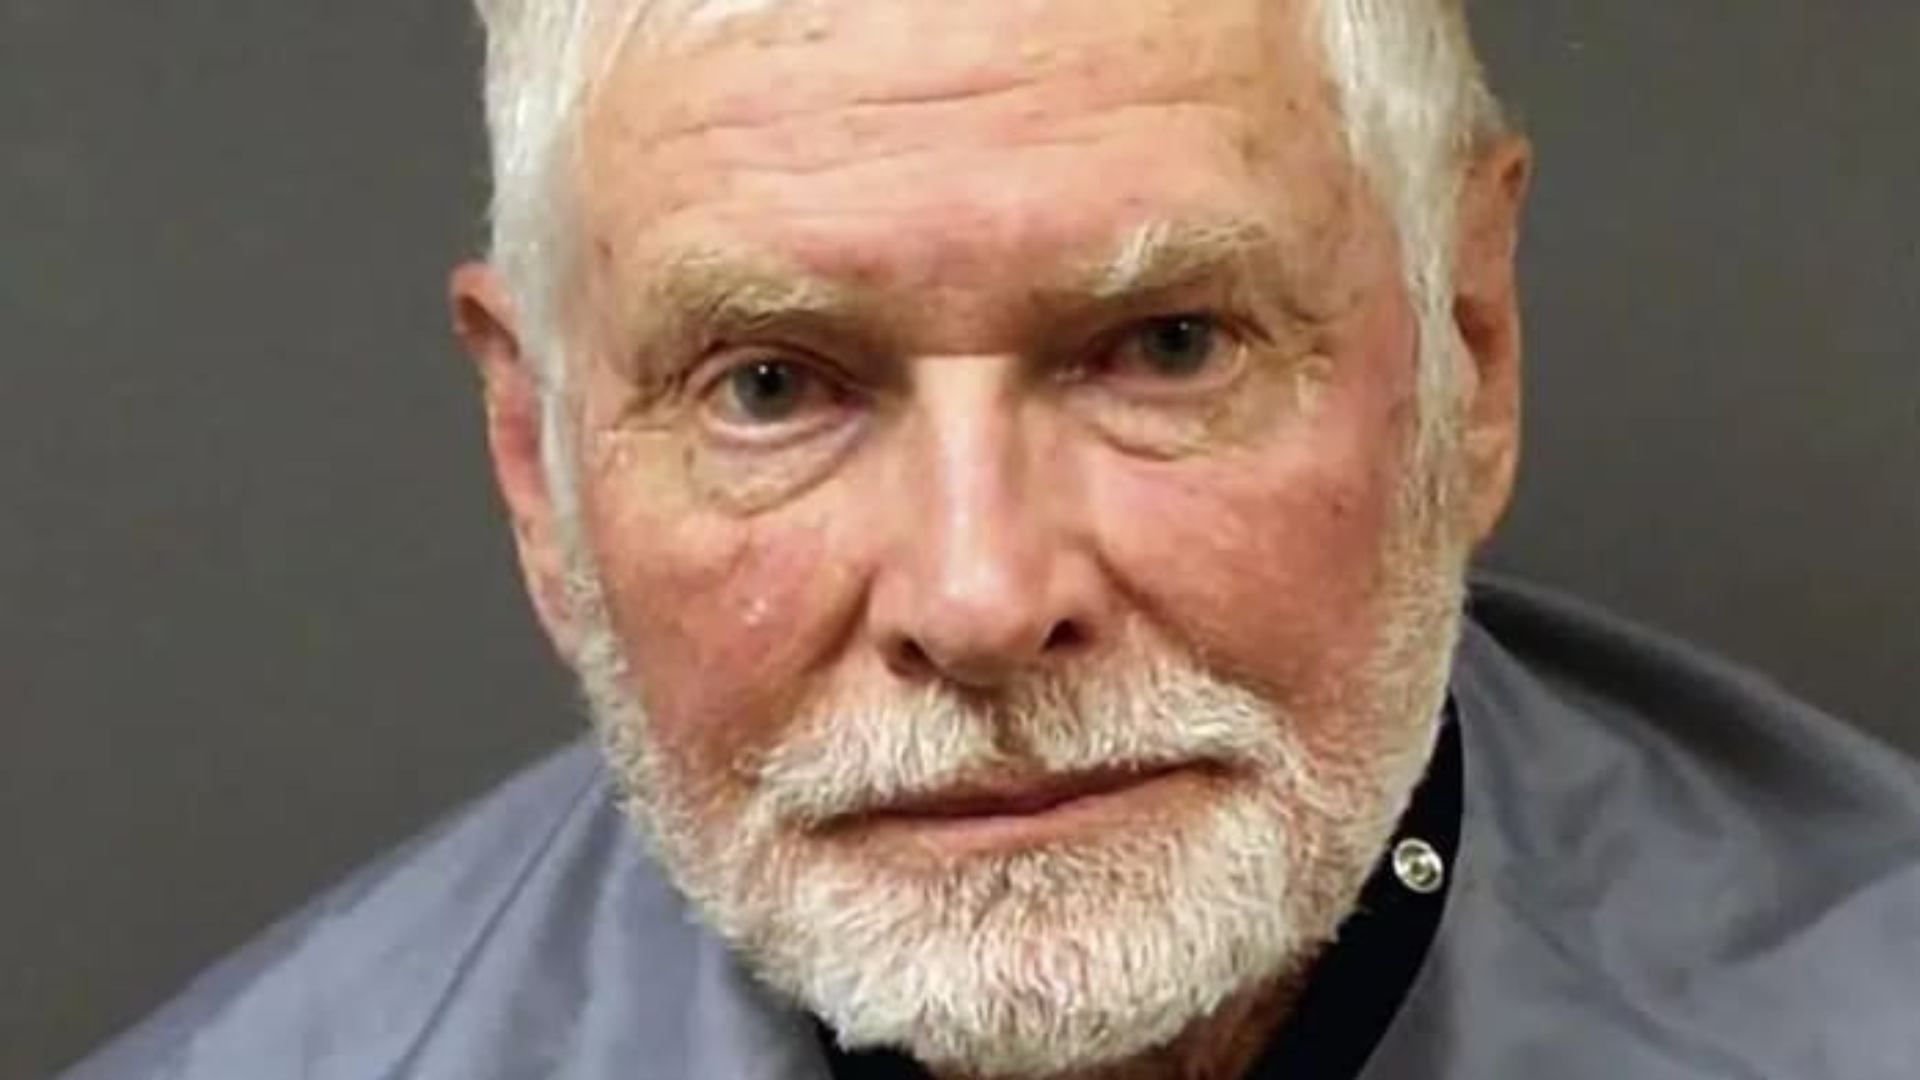  George Alan Kelly, de 73 años, acusado de asesinar a un migrante mexicano en Arizona